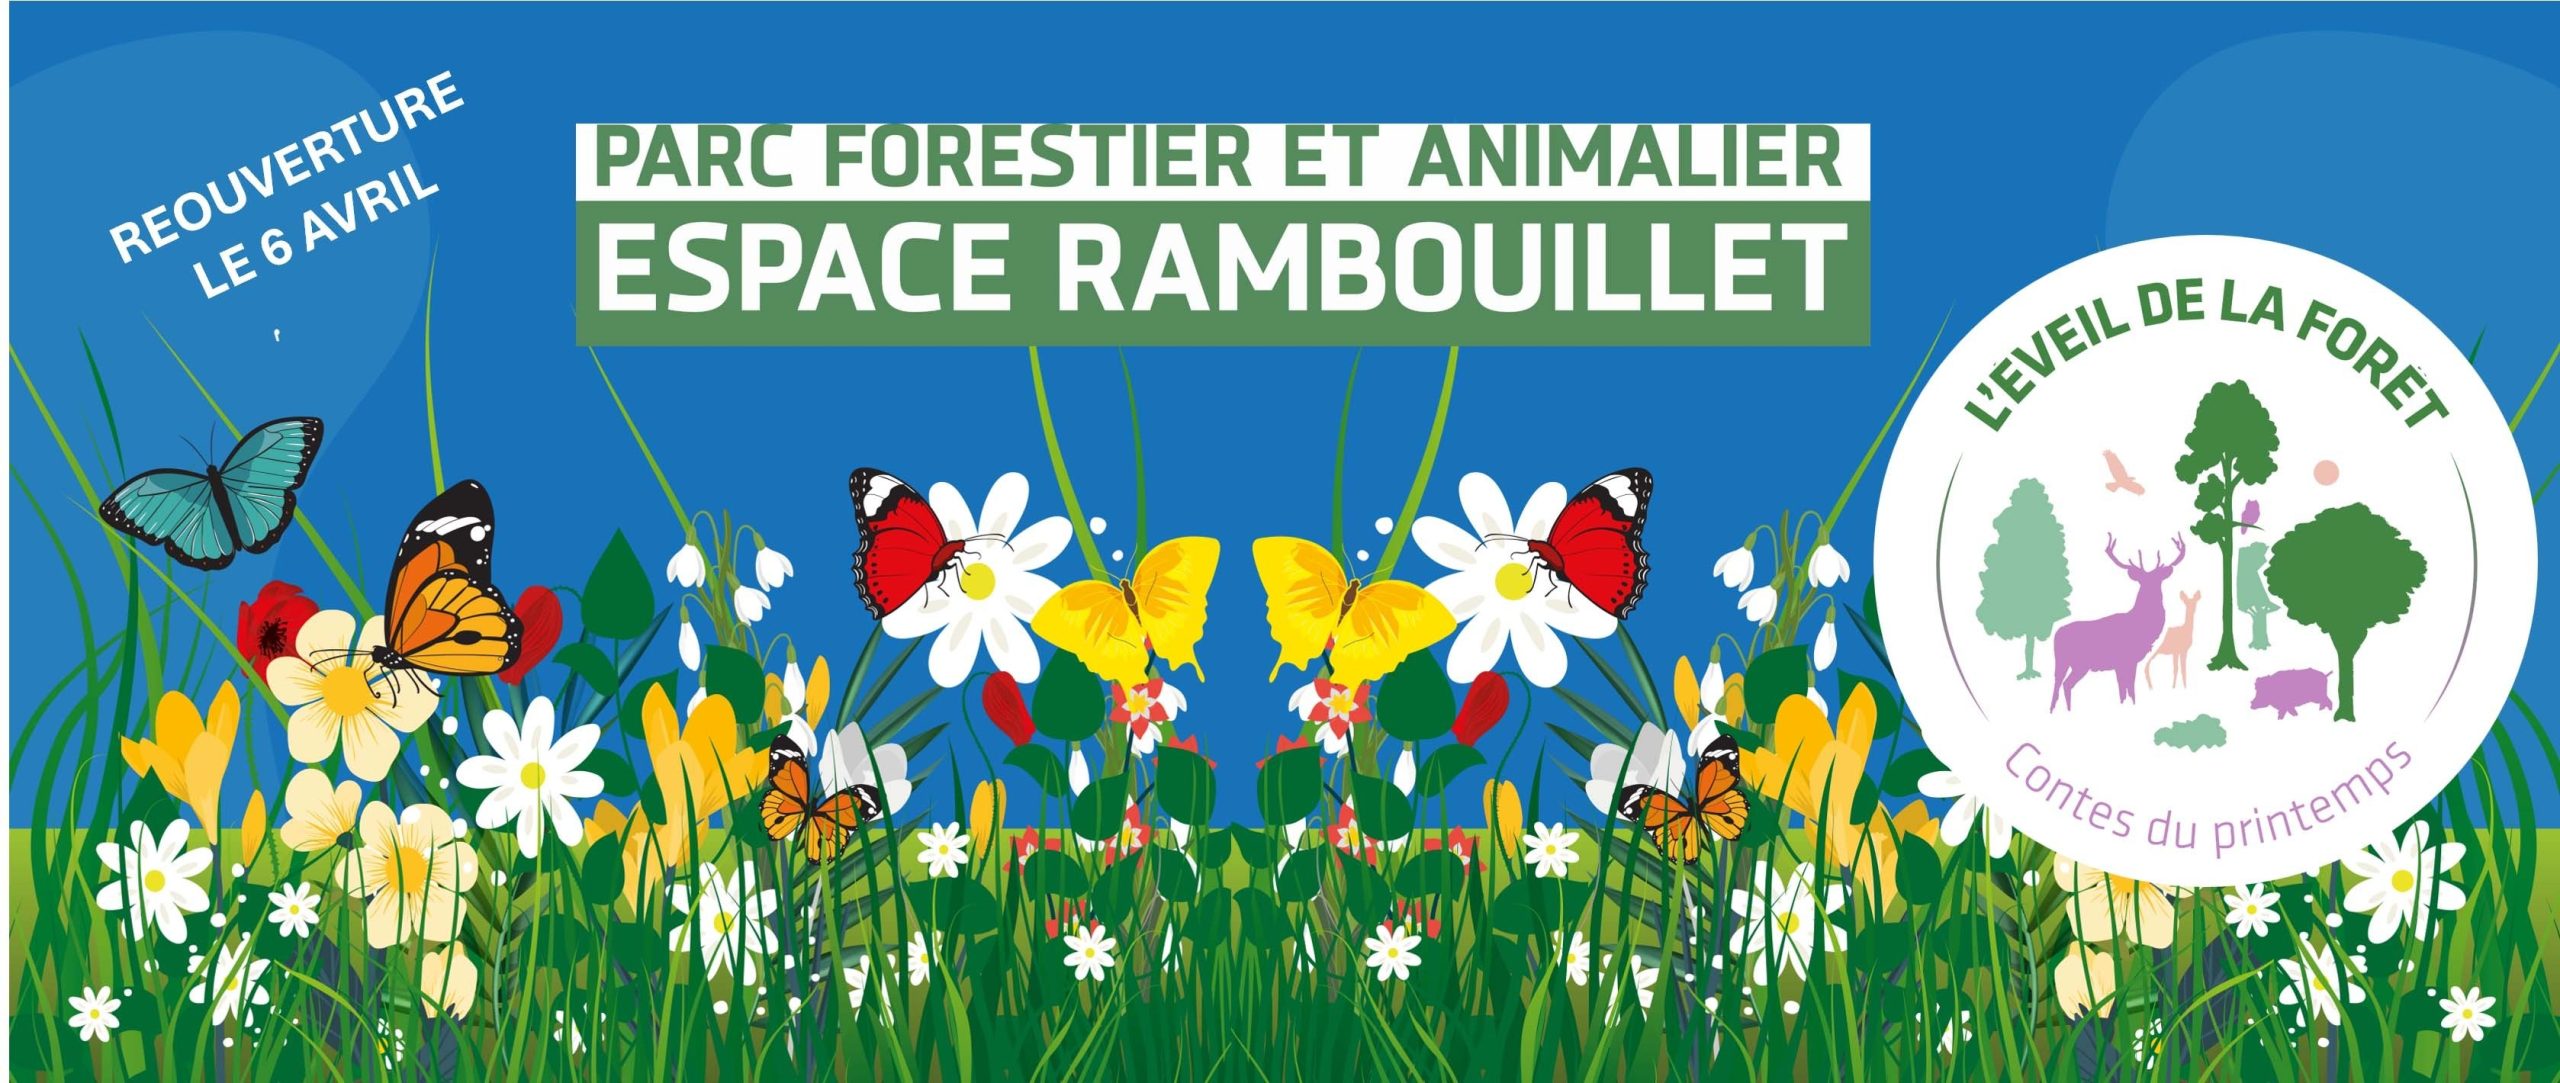 ESPACE RAMBOUILLET -L’Eveil de la Forêt    Contes du Printemps   du 6 avril 2024 à fin mai 2024